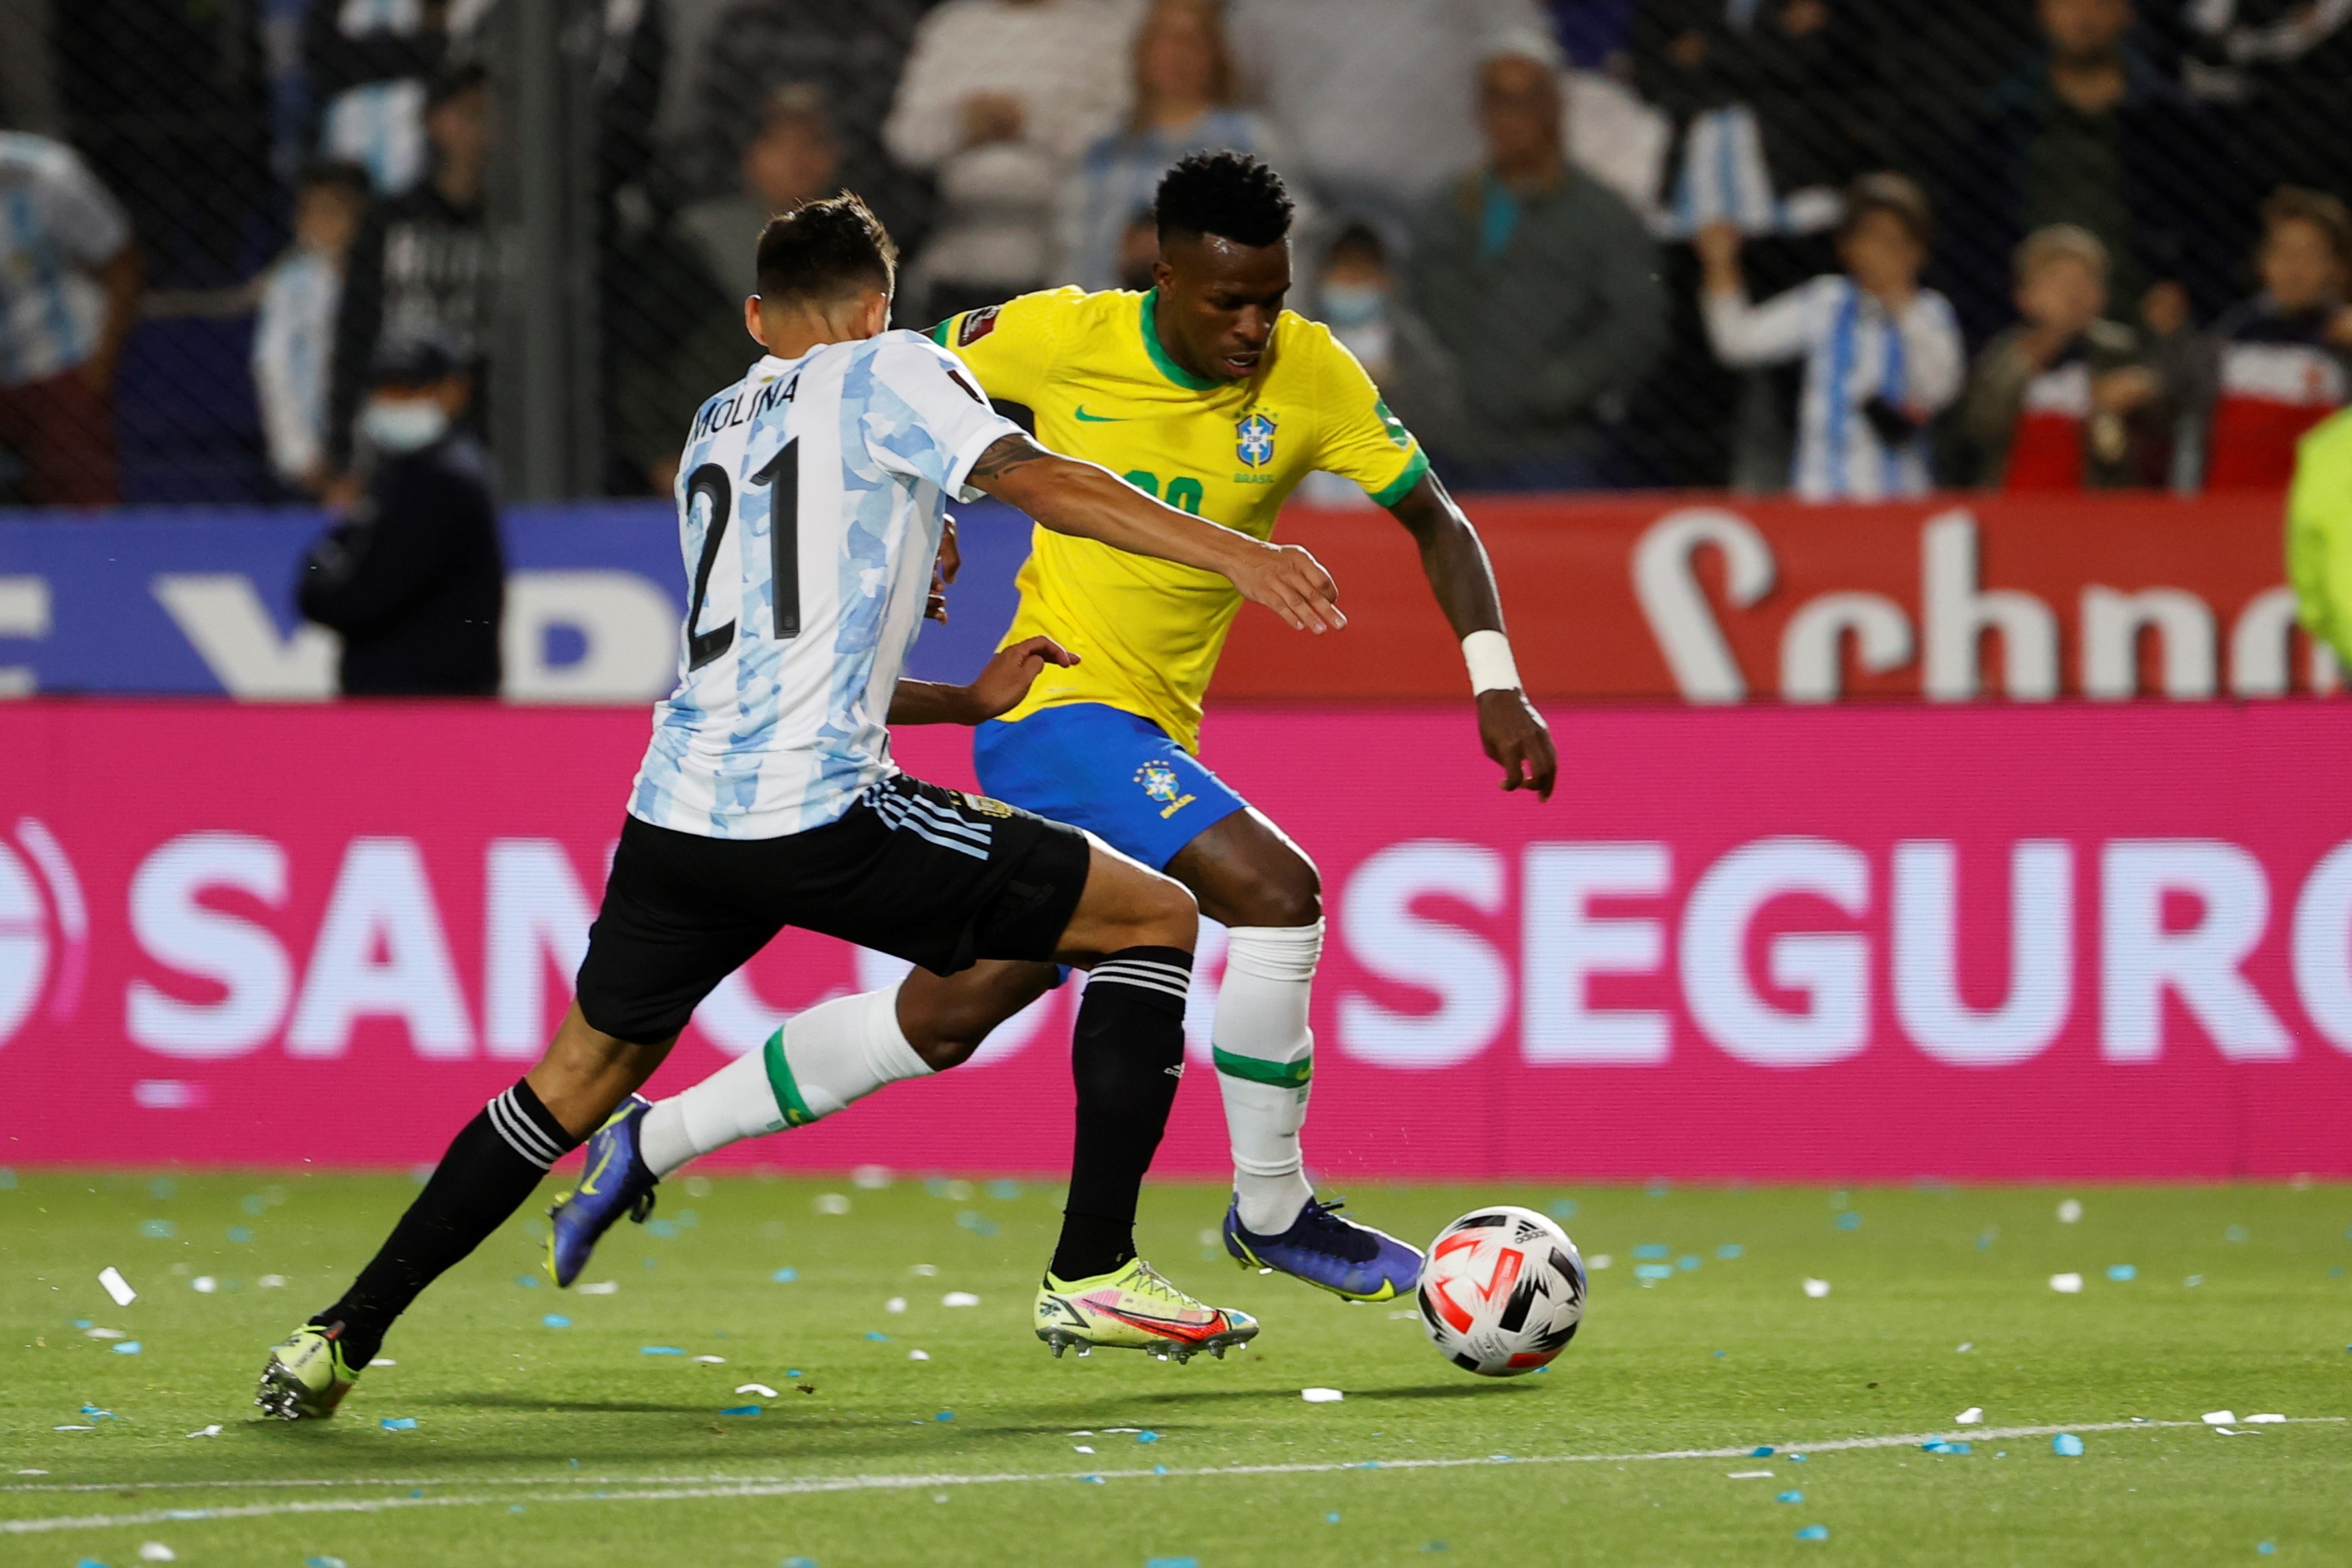 Nahuel Molina (i) de Argentina disputa el balón con Vinicius de Brasil en el superclásico sudamericano por las eliminatorias al Mundial de Qatar 2022. Foto Prensa Libre: EFE.